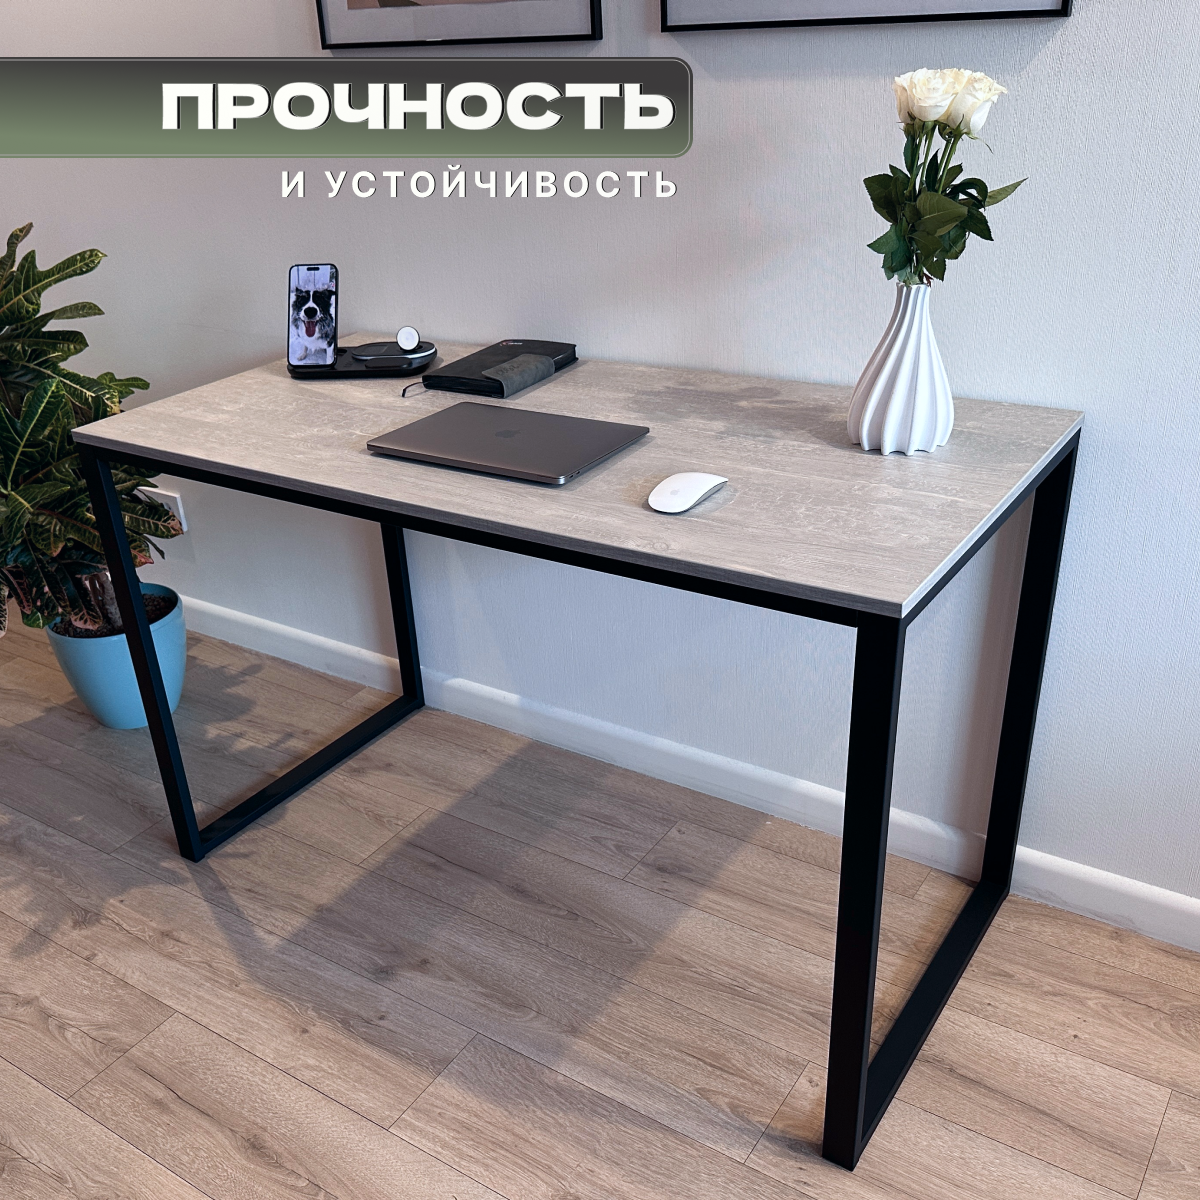 Стол письменный, офисный, кухонный, обеденный в стиле Loft цвет Феникс 130 см